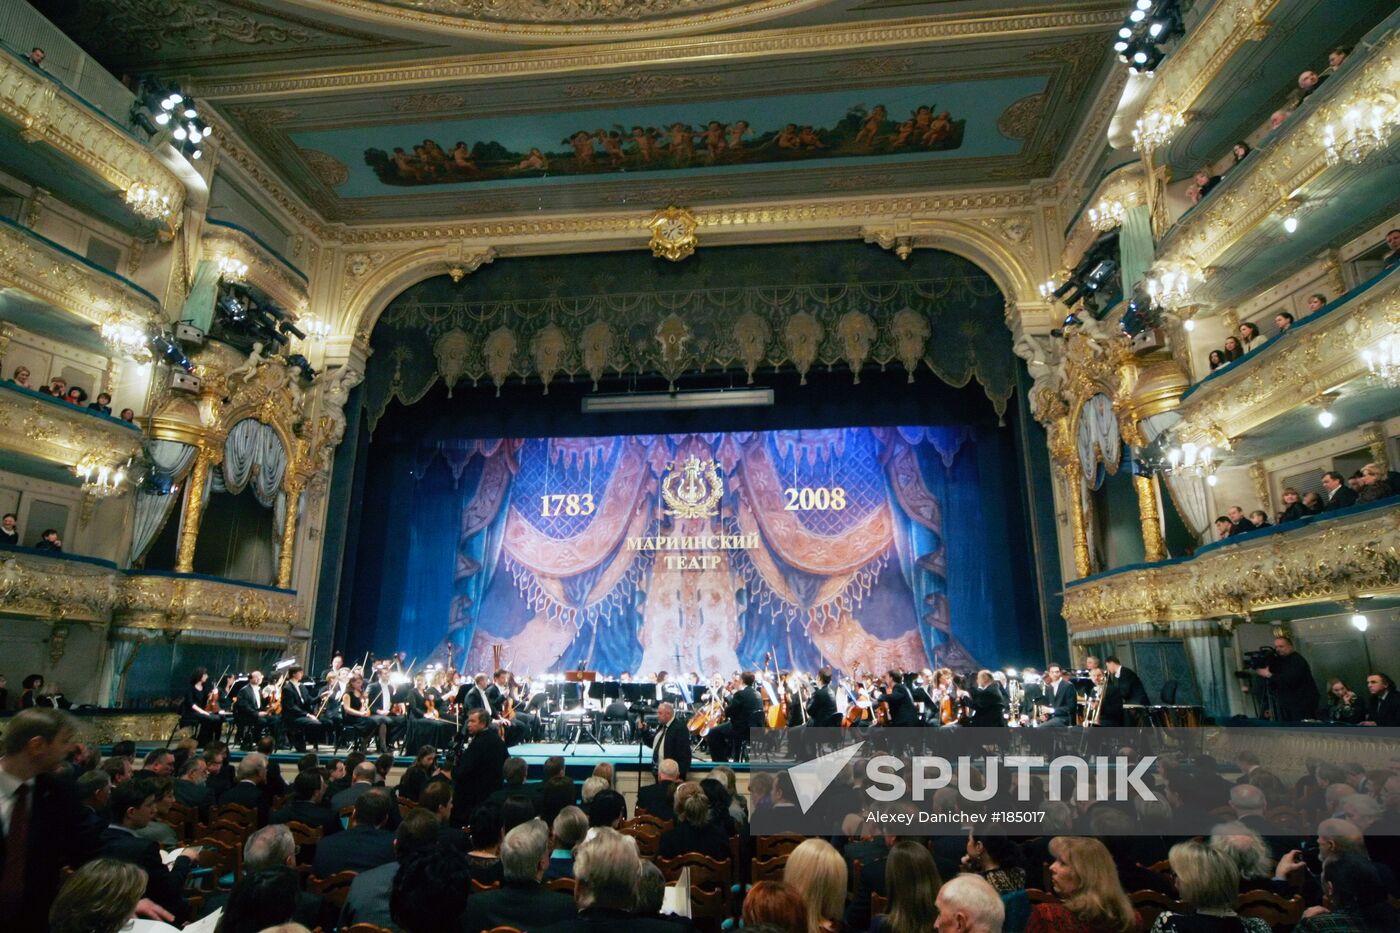 Anniversary of the Mariinsky Theater